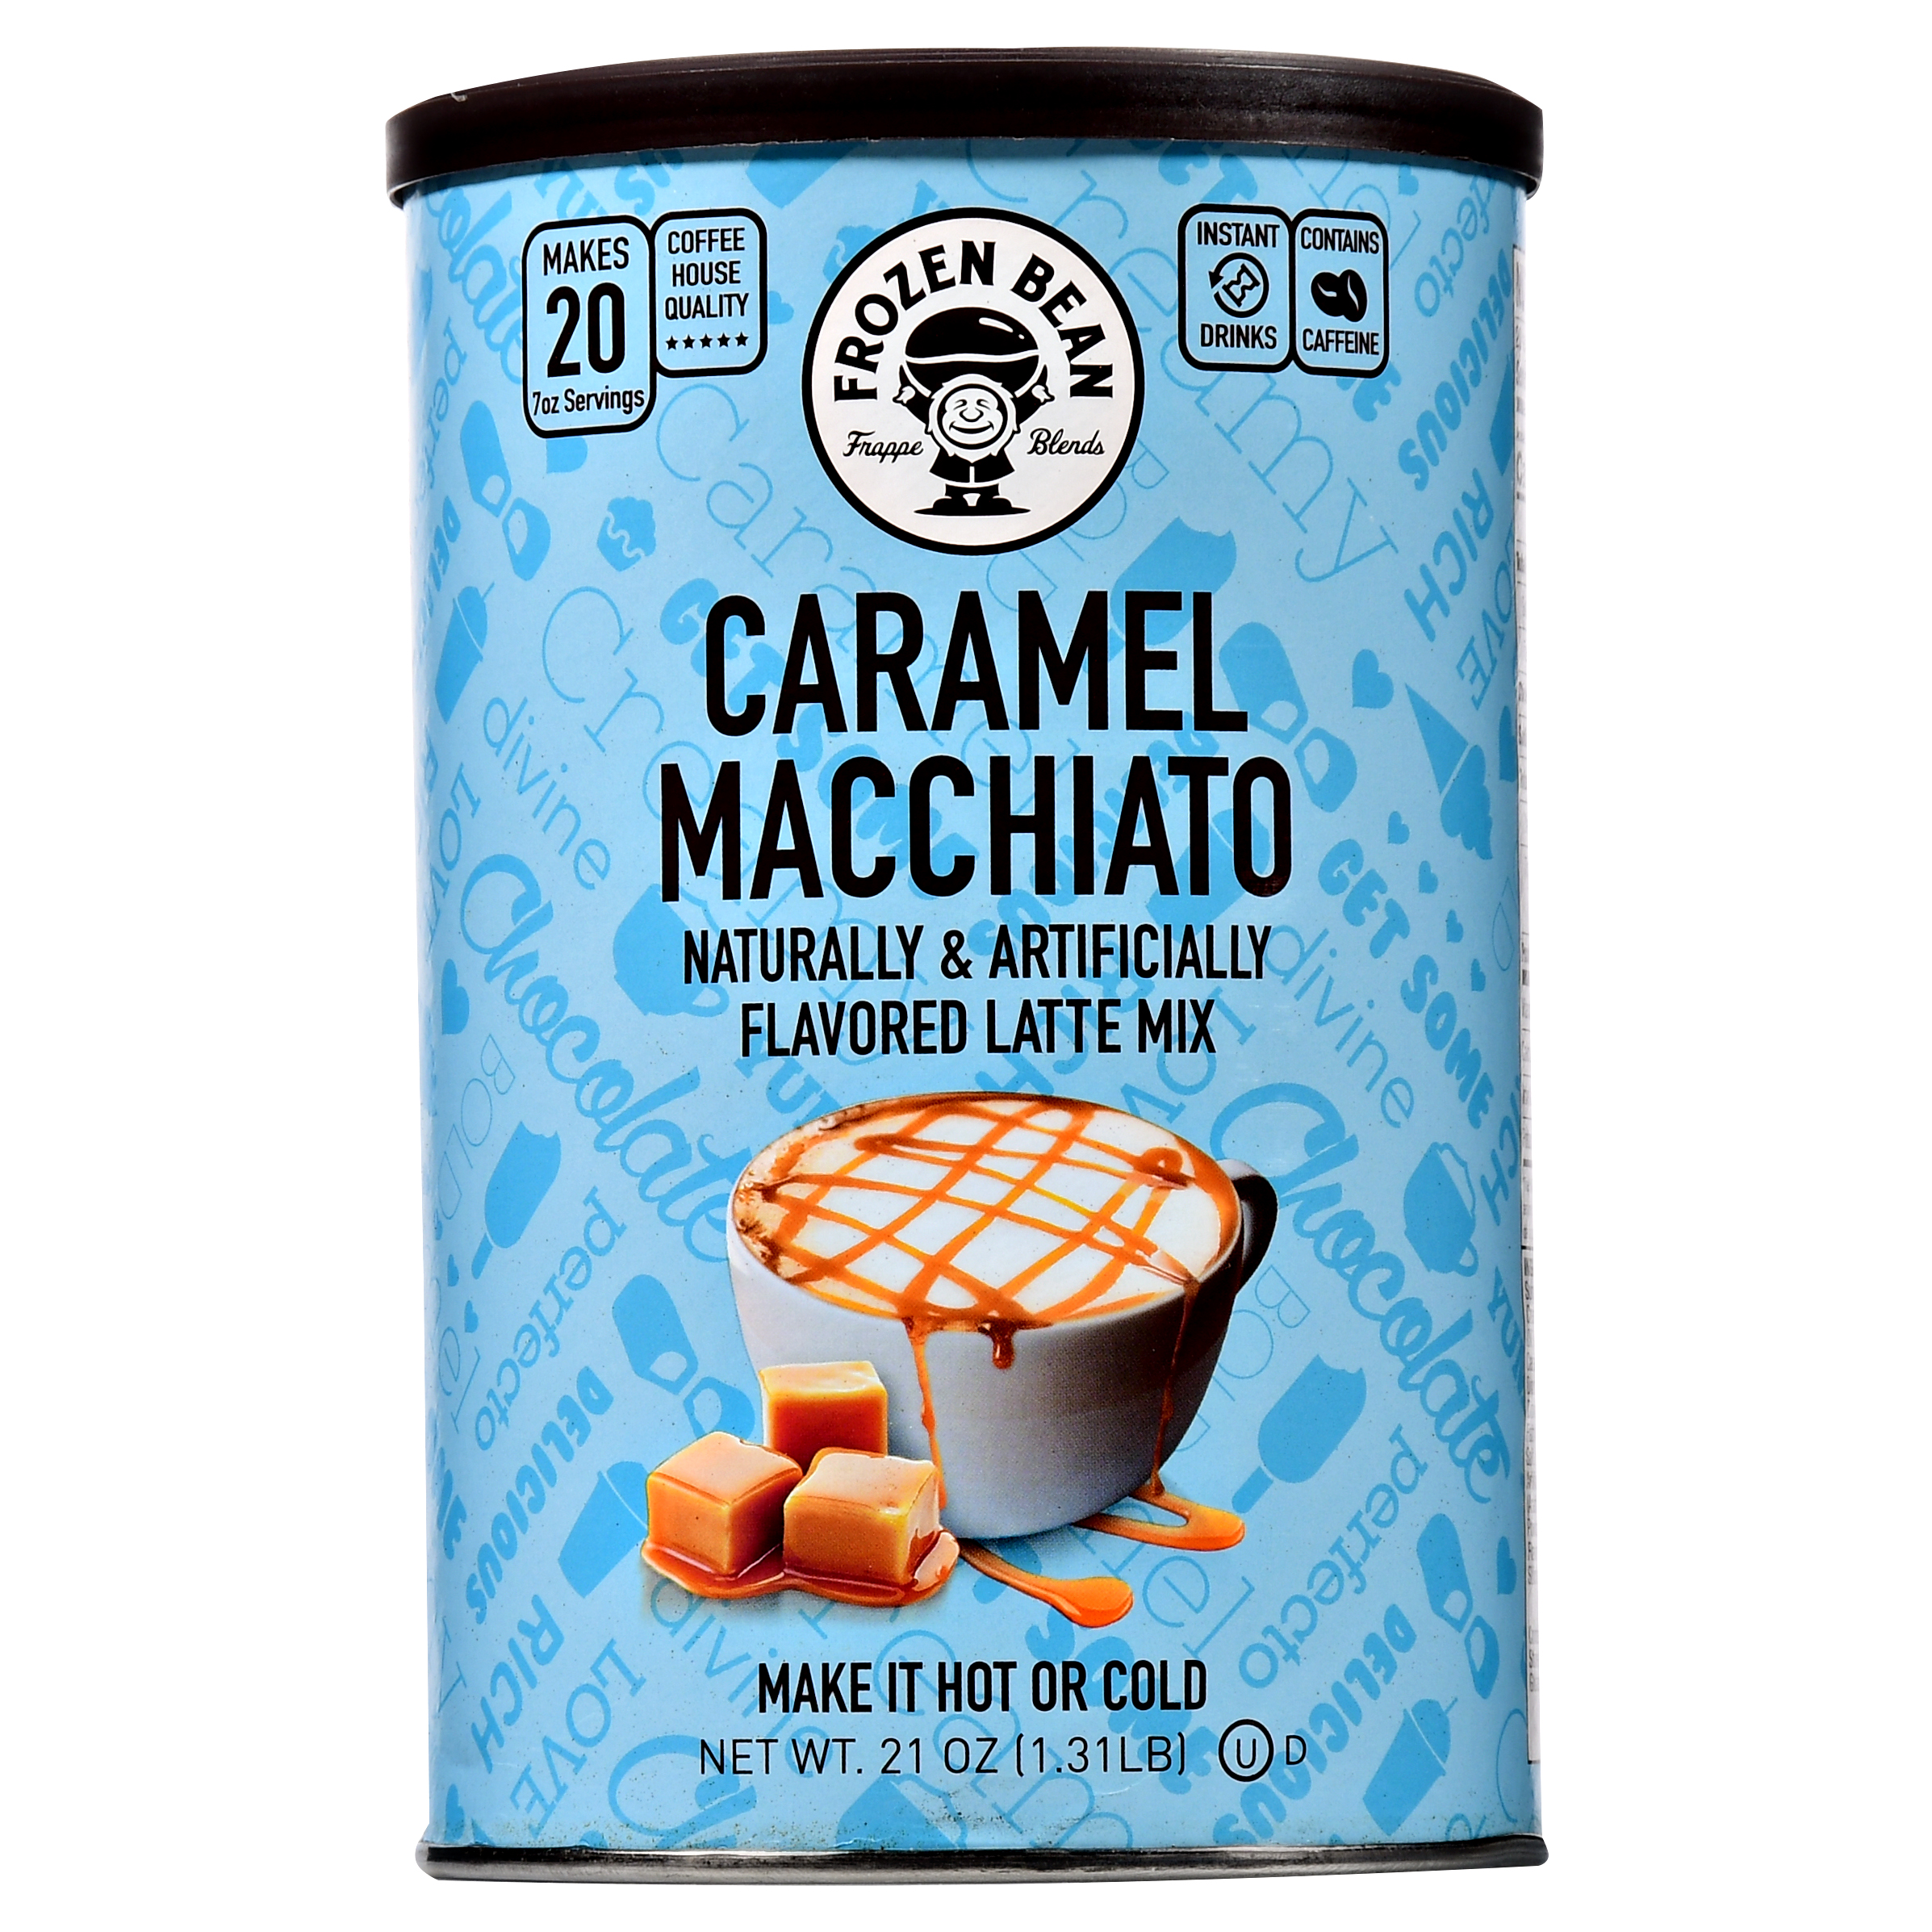 The frozen bean caramel macchiato